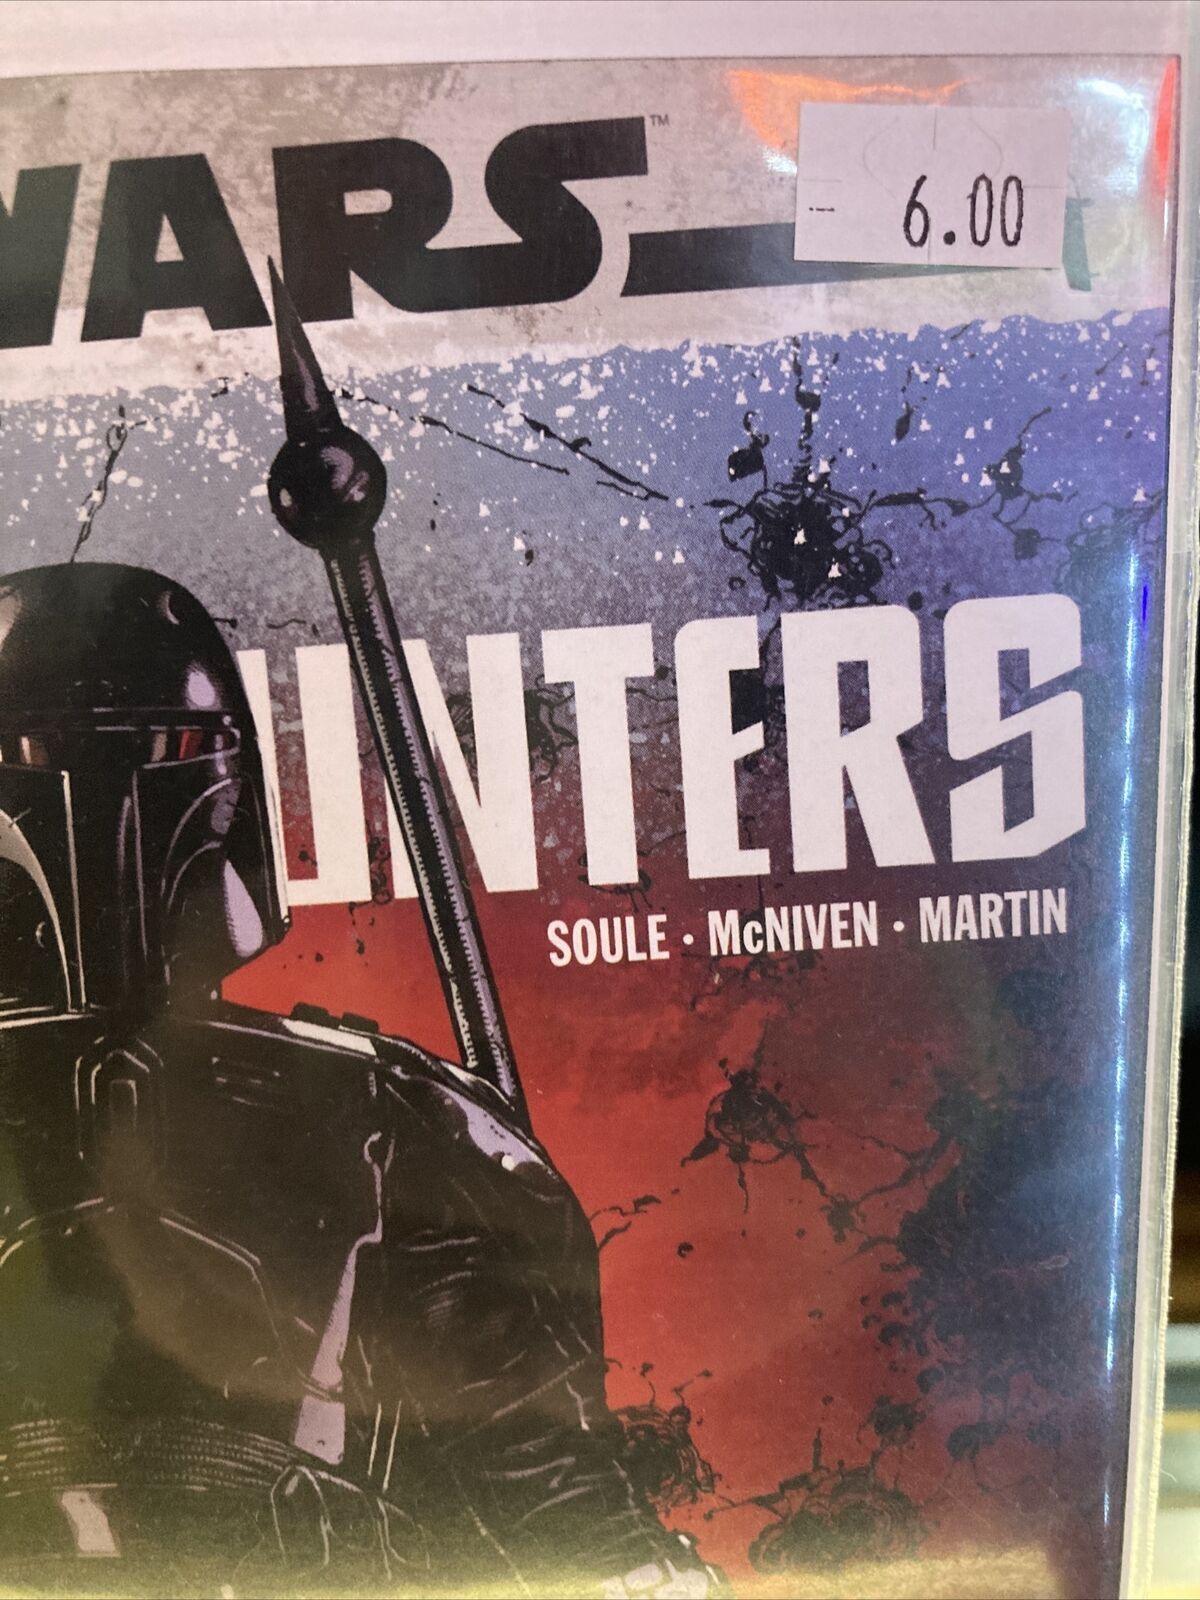 Star Wars War Of The Bounty Hunters Alpha Directors Cut #1 McNiven Cover 2021